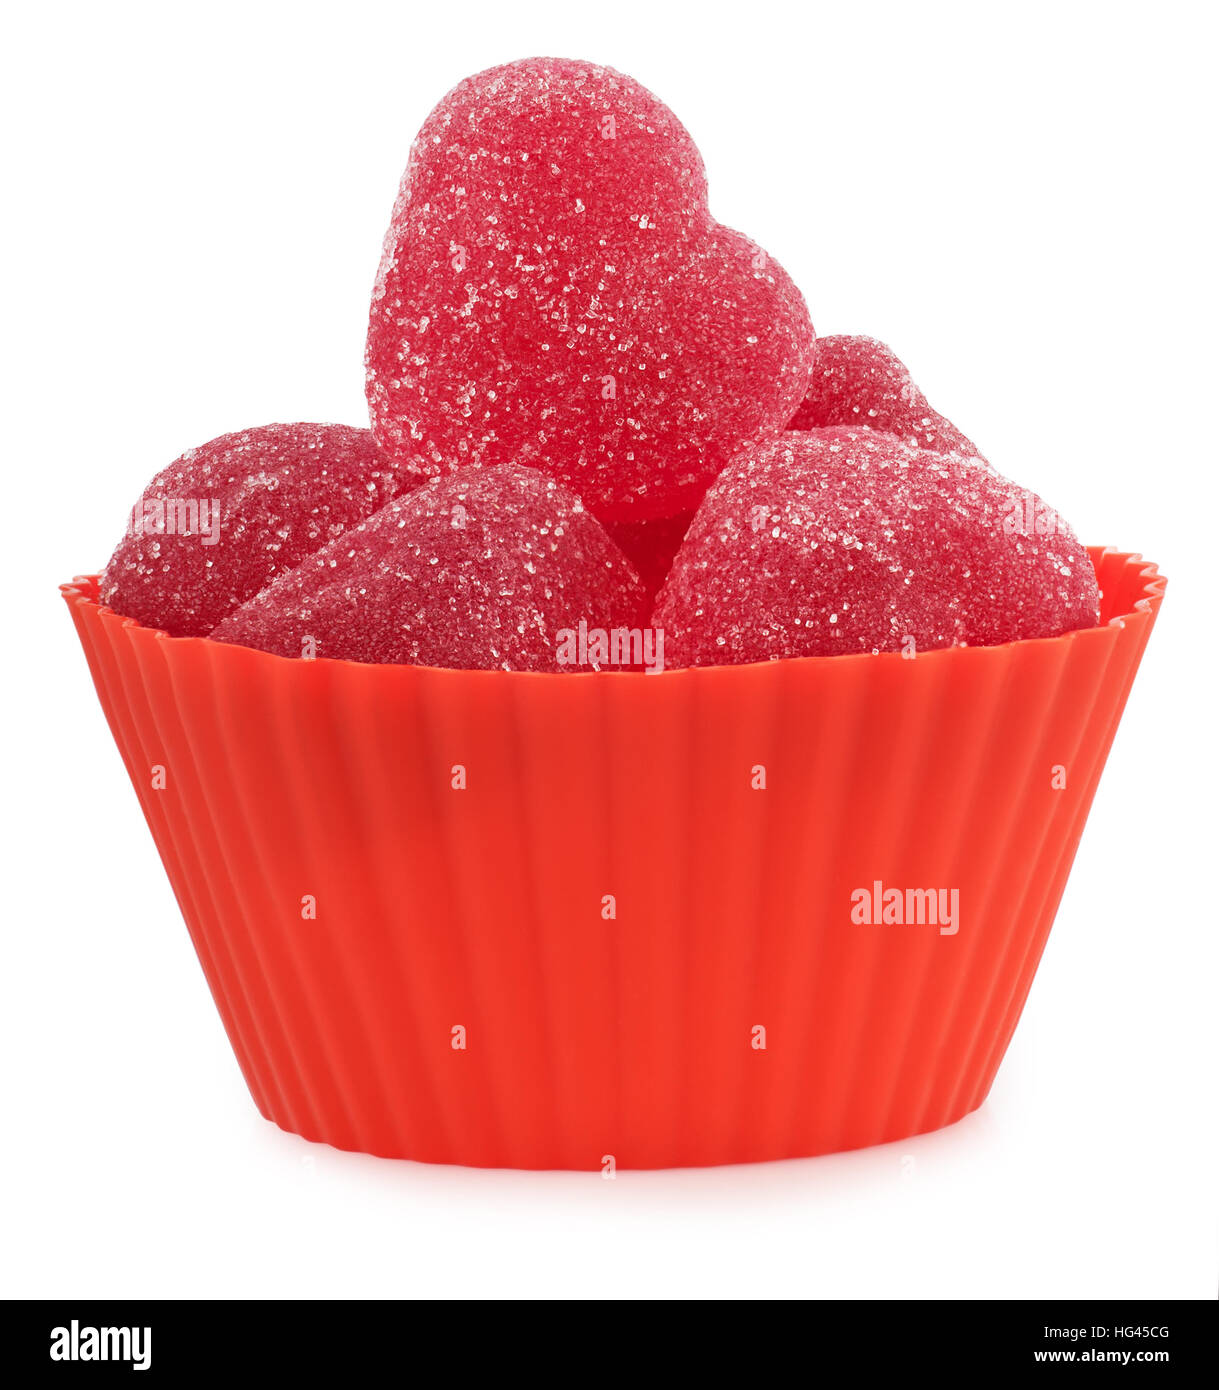 Bonbons coeur gelée rouge contenant en silicone isolé sur fond blanc Banque D'Images